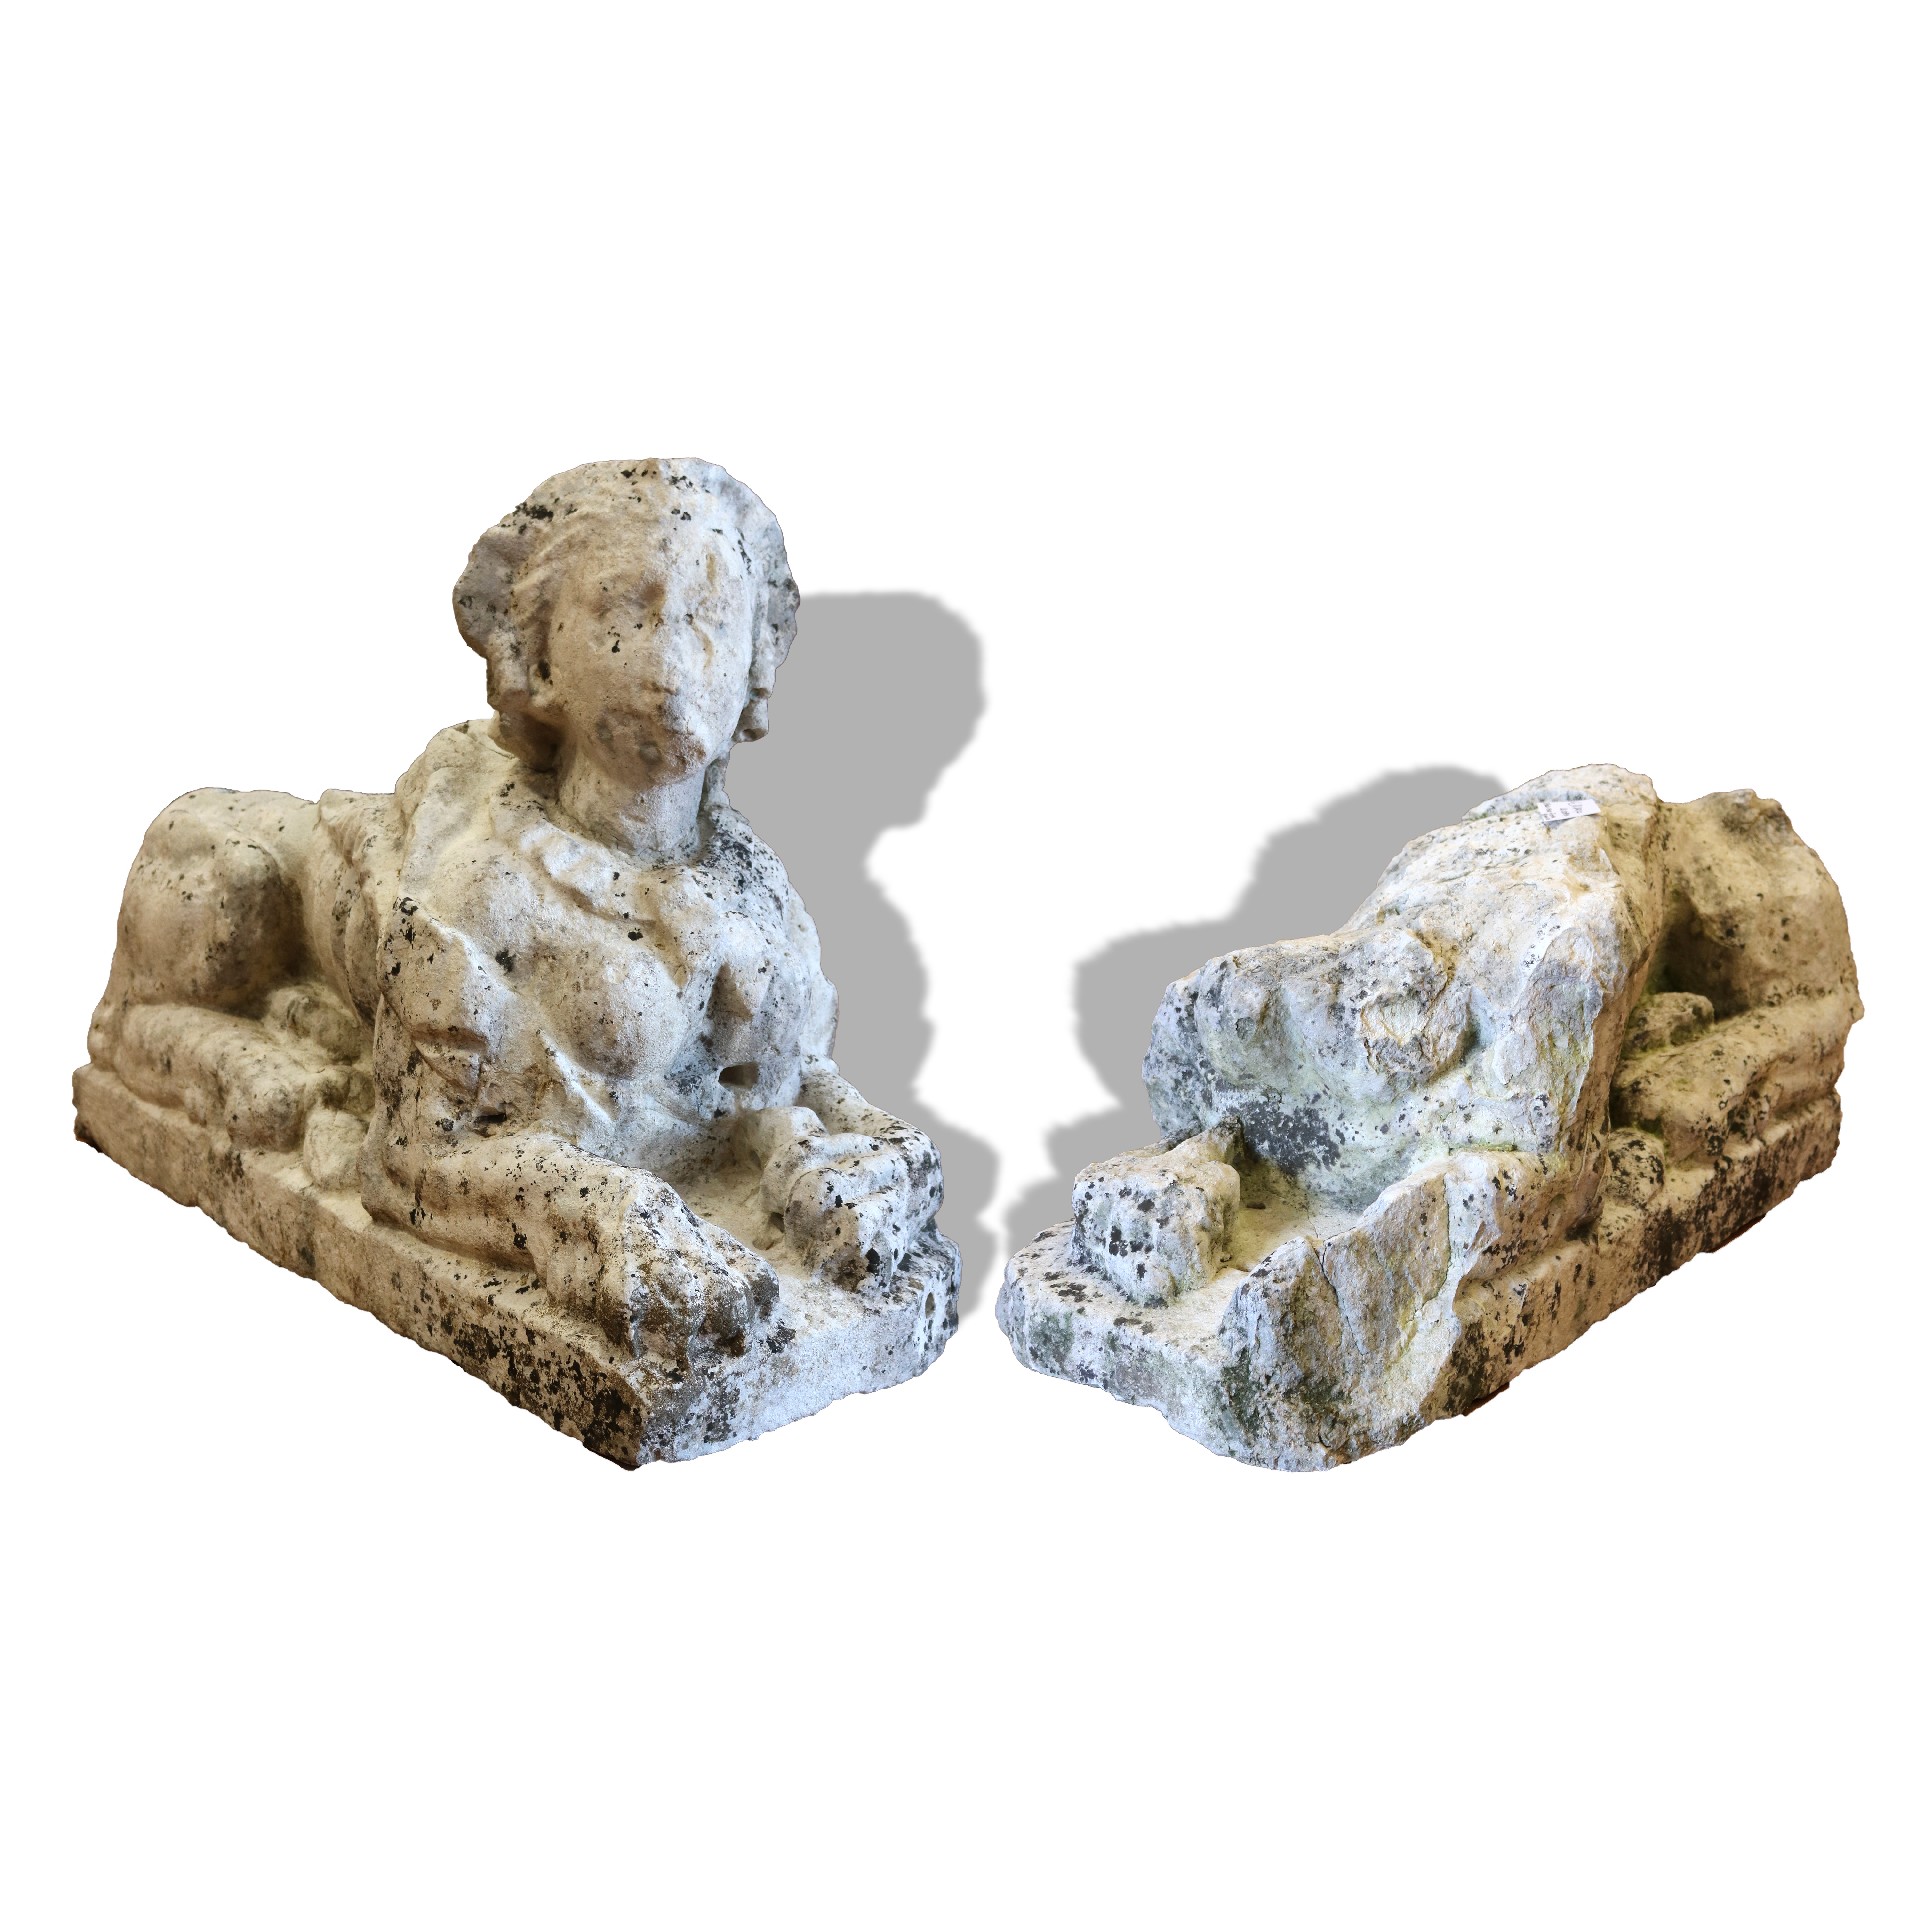 Antica coppia di sculture in pietra. - Statue Antiche - Sculture Antiche - Prodotti - Antichità Fiorillo